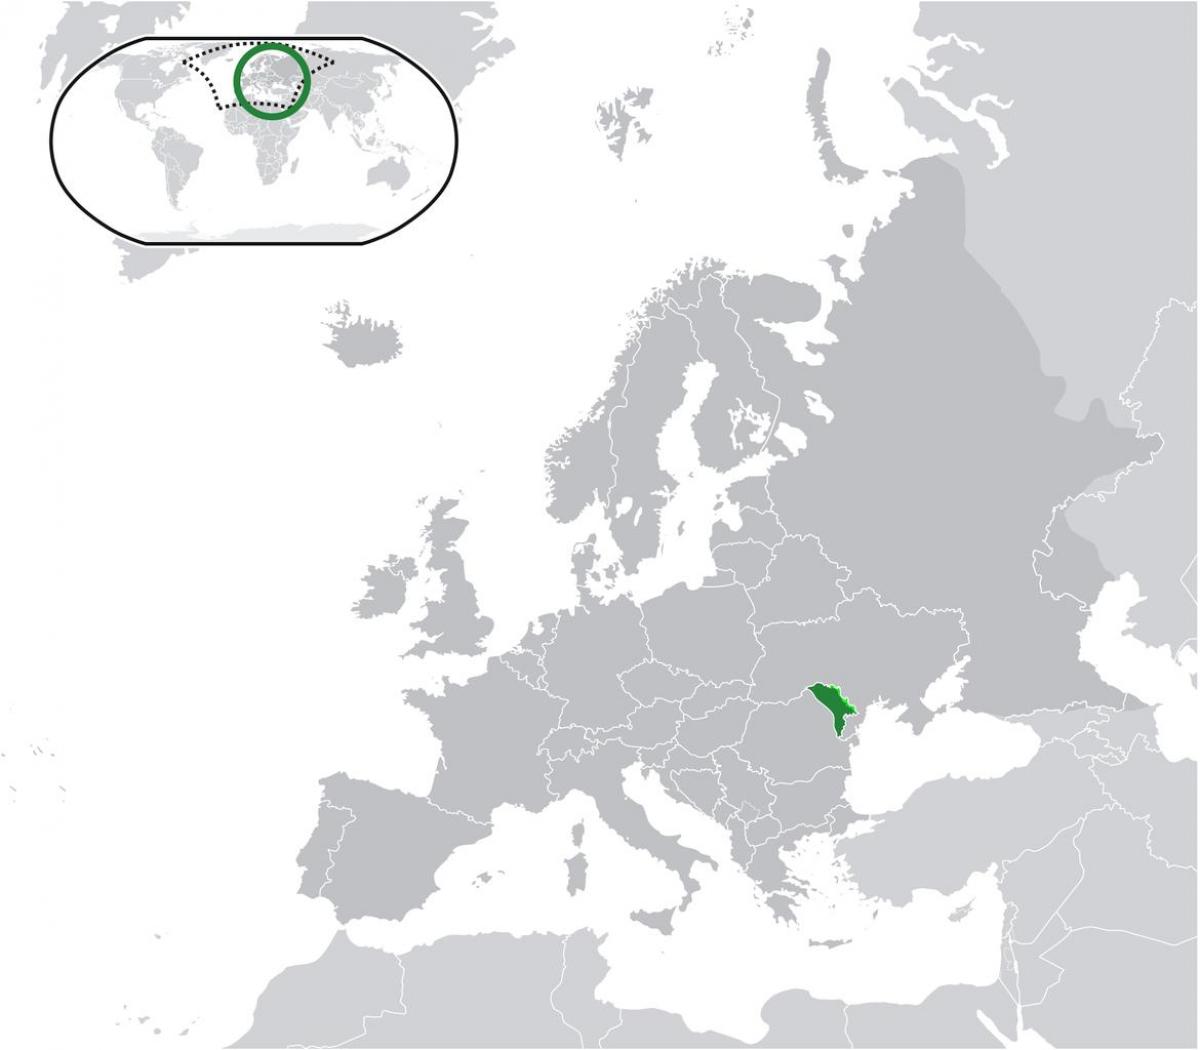 Розташування Молдови на карті світу